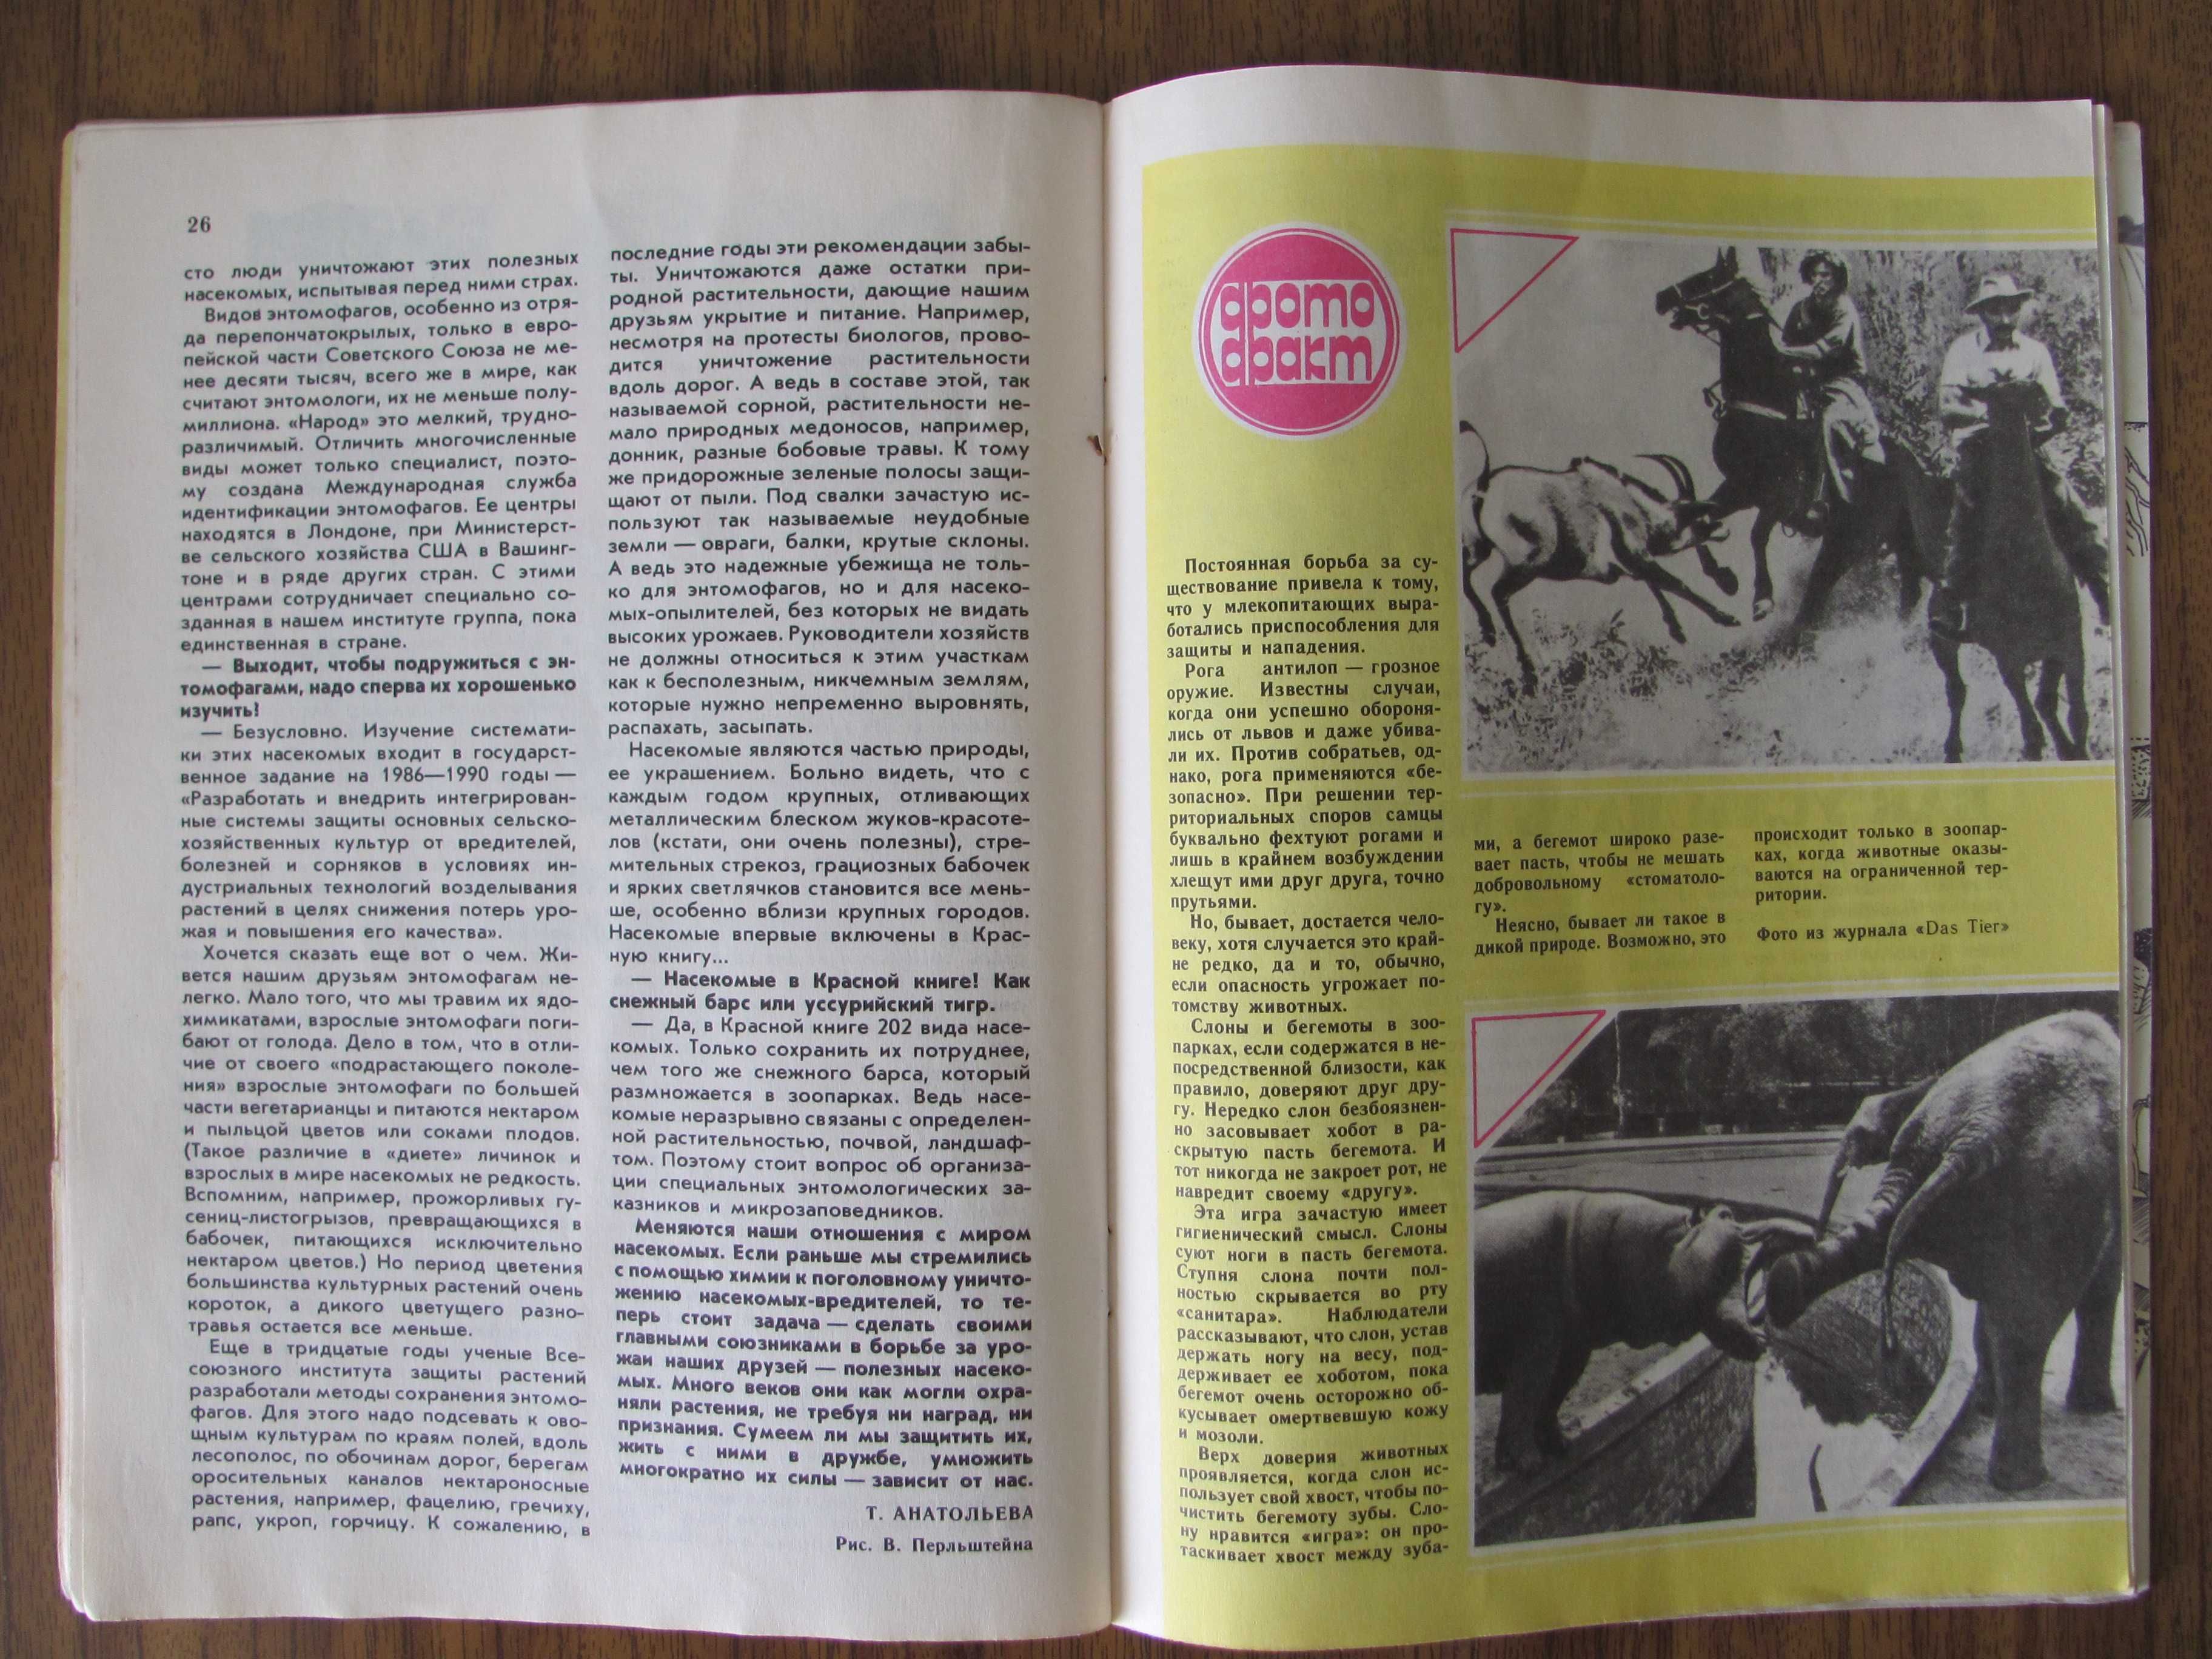 Журнал из СССР Юный натуралист 1987 г. выпуск № 9 – любимый с детства!